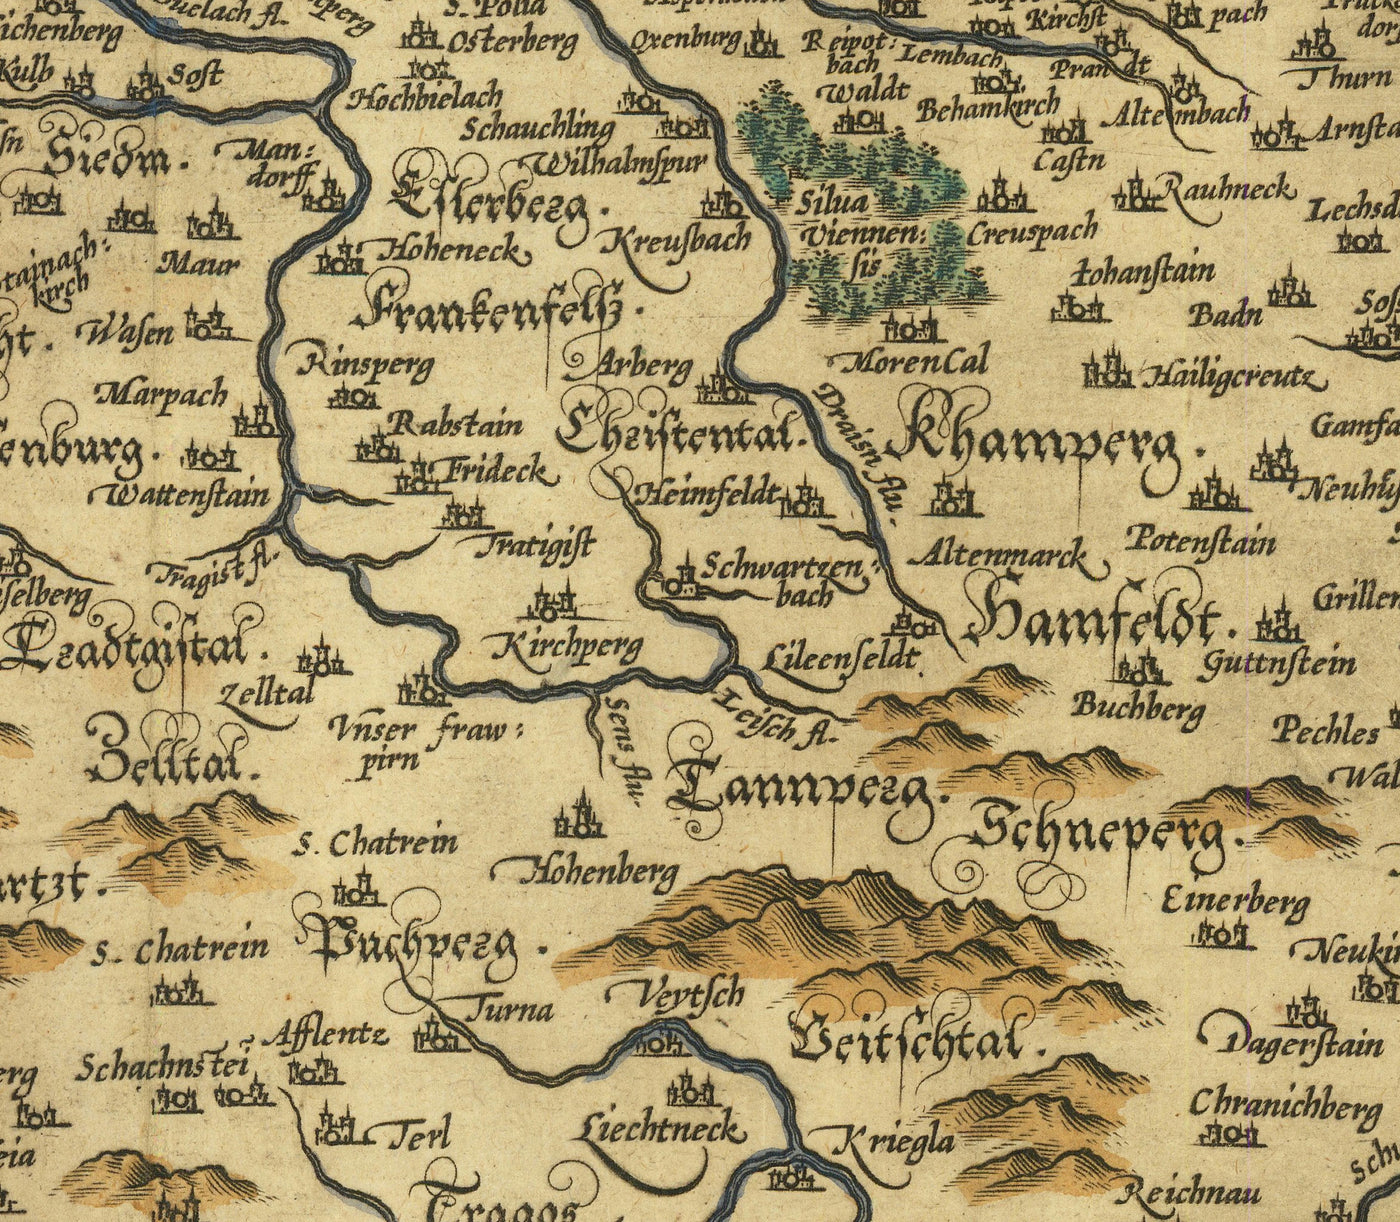 Antiguo mapa de Austria por Abraham Ortelius en 1594 - Viena, Lago Neusiedl, Tulin, Bratislava, Wiener Neustadt